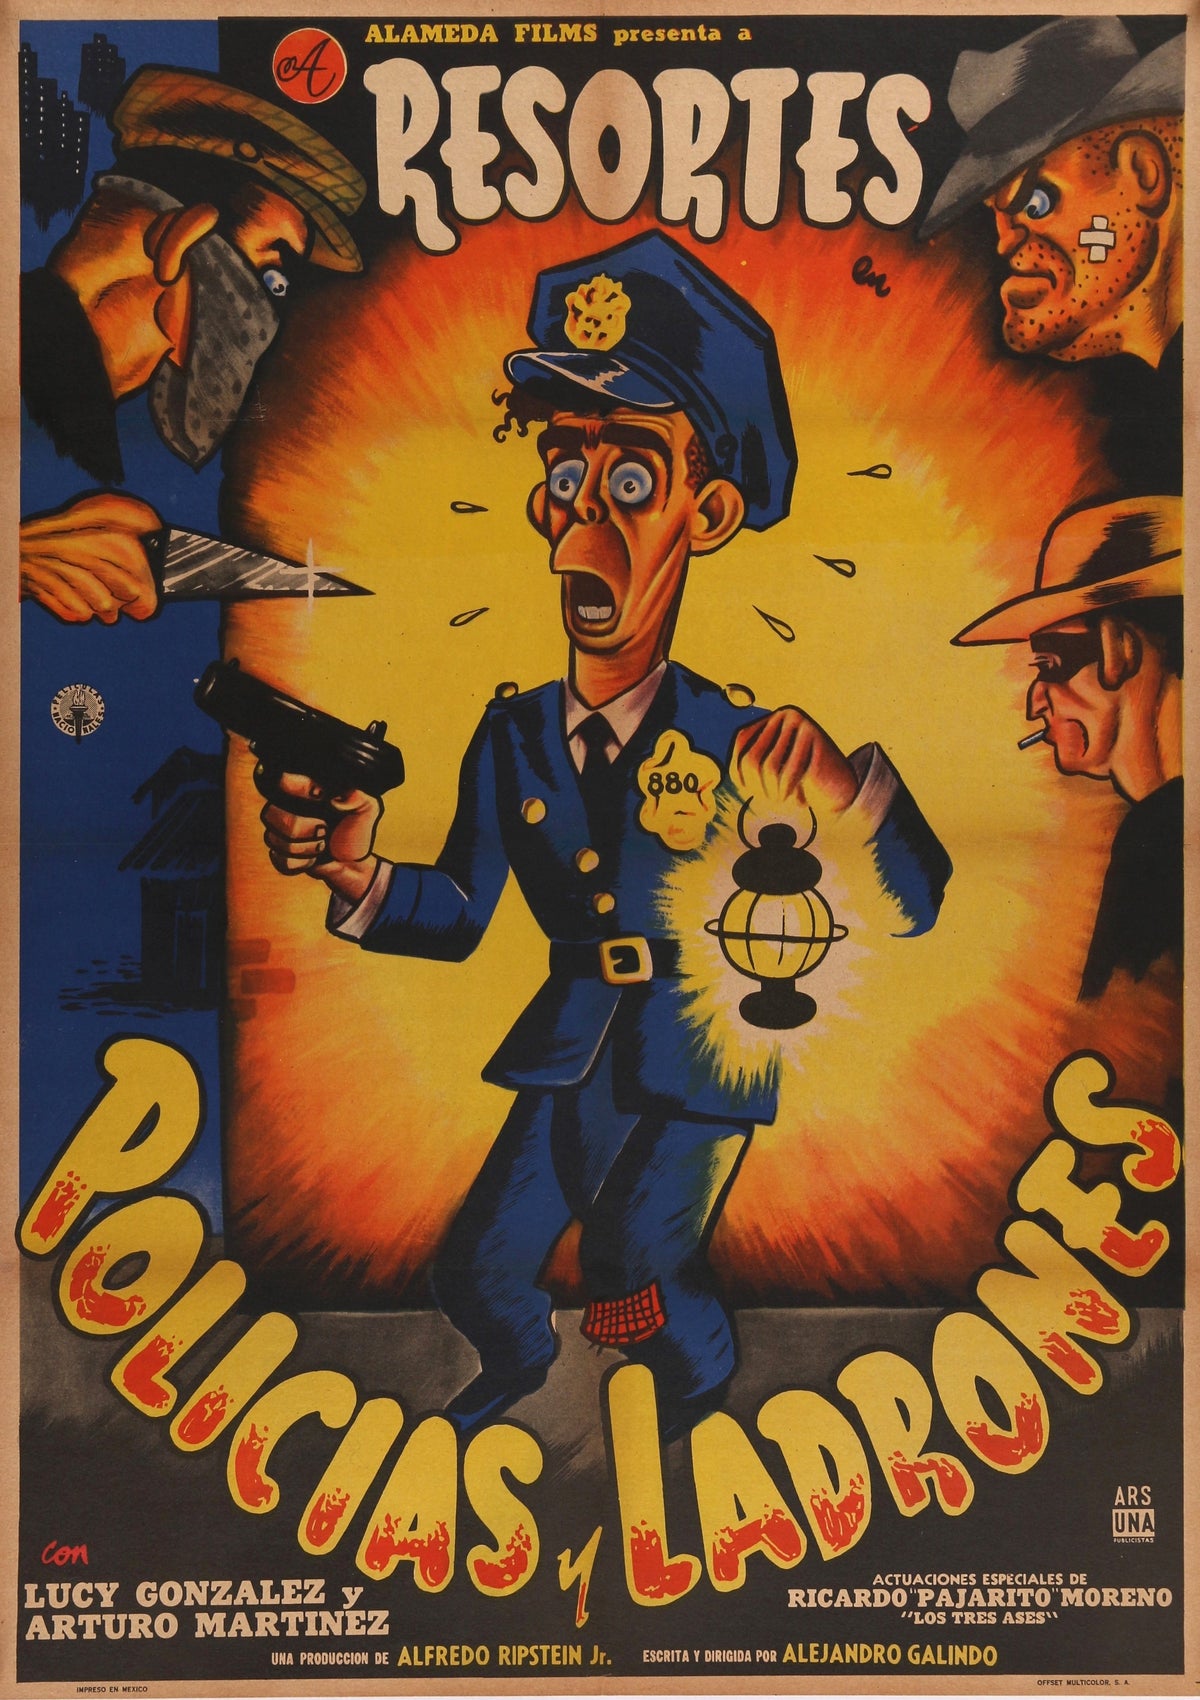 Policias y Ladrones- Resortes - Authentic Vintage Poster